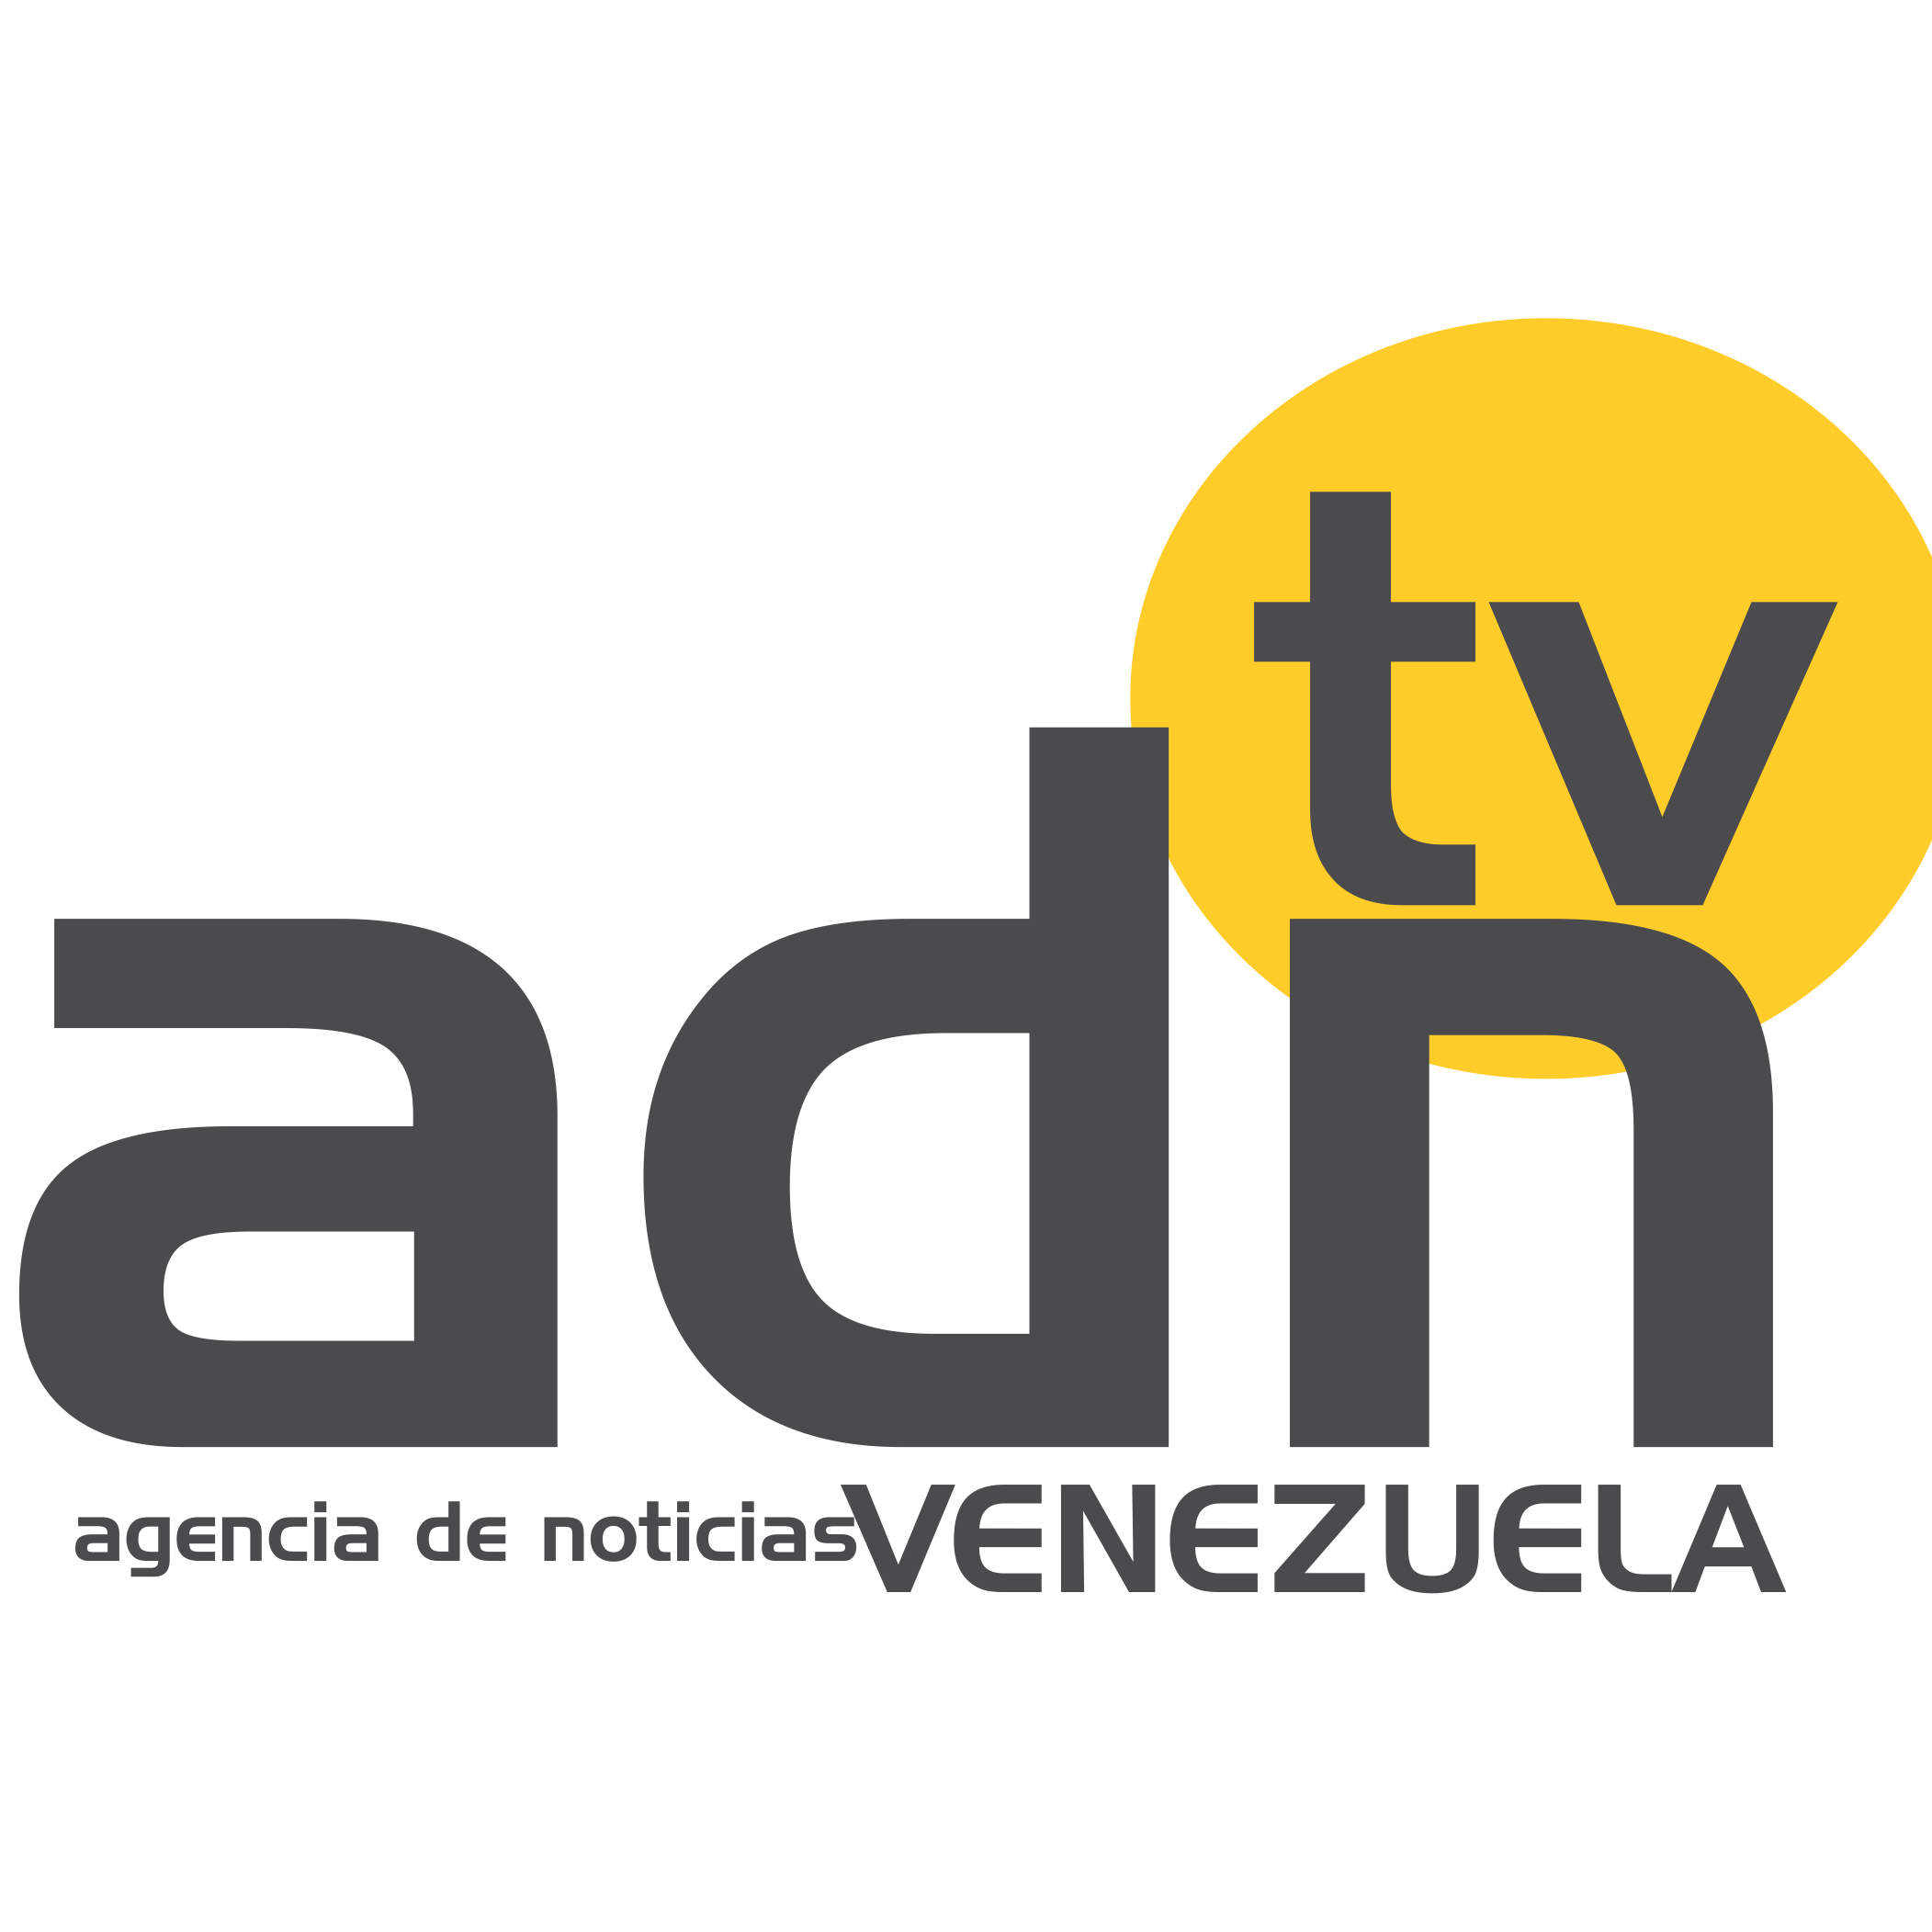 La nueva manera para estar Informado. Todo lo que quieres saber esta en ADN! La Señal Digital Informativa de Venezuela.